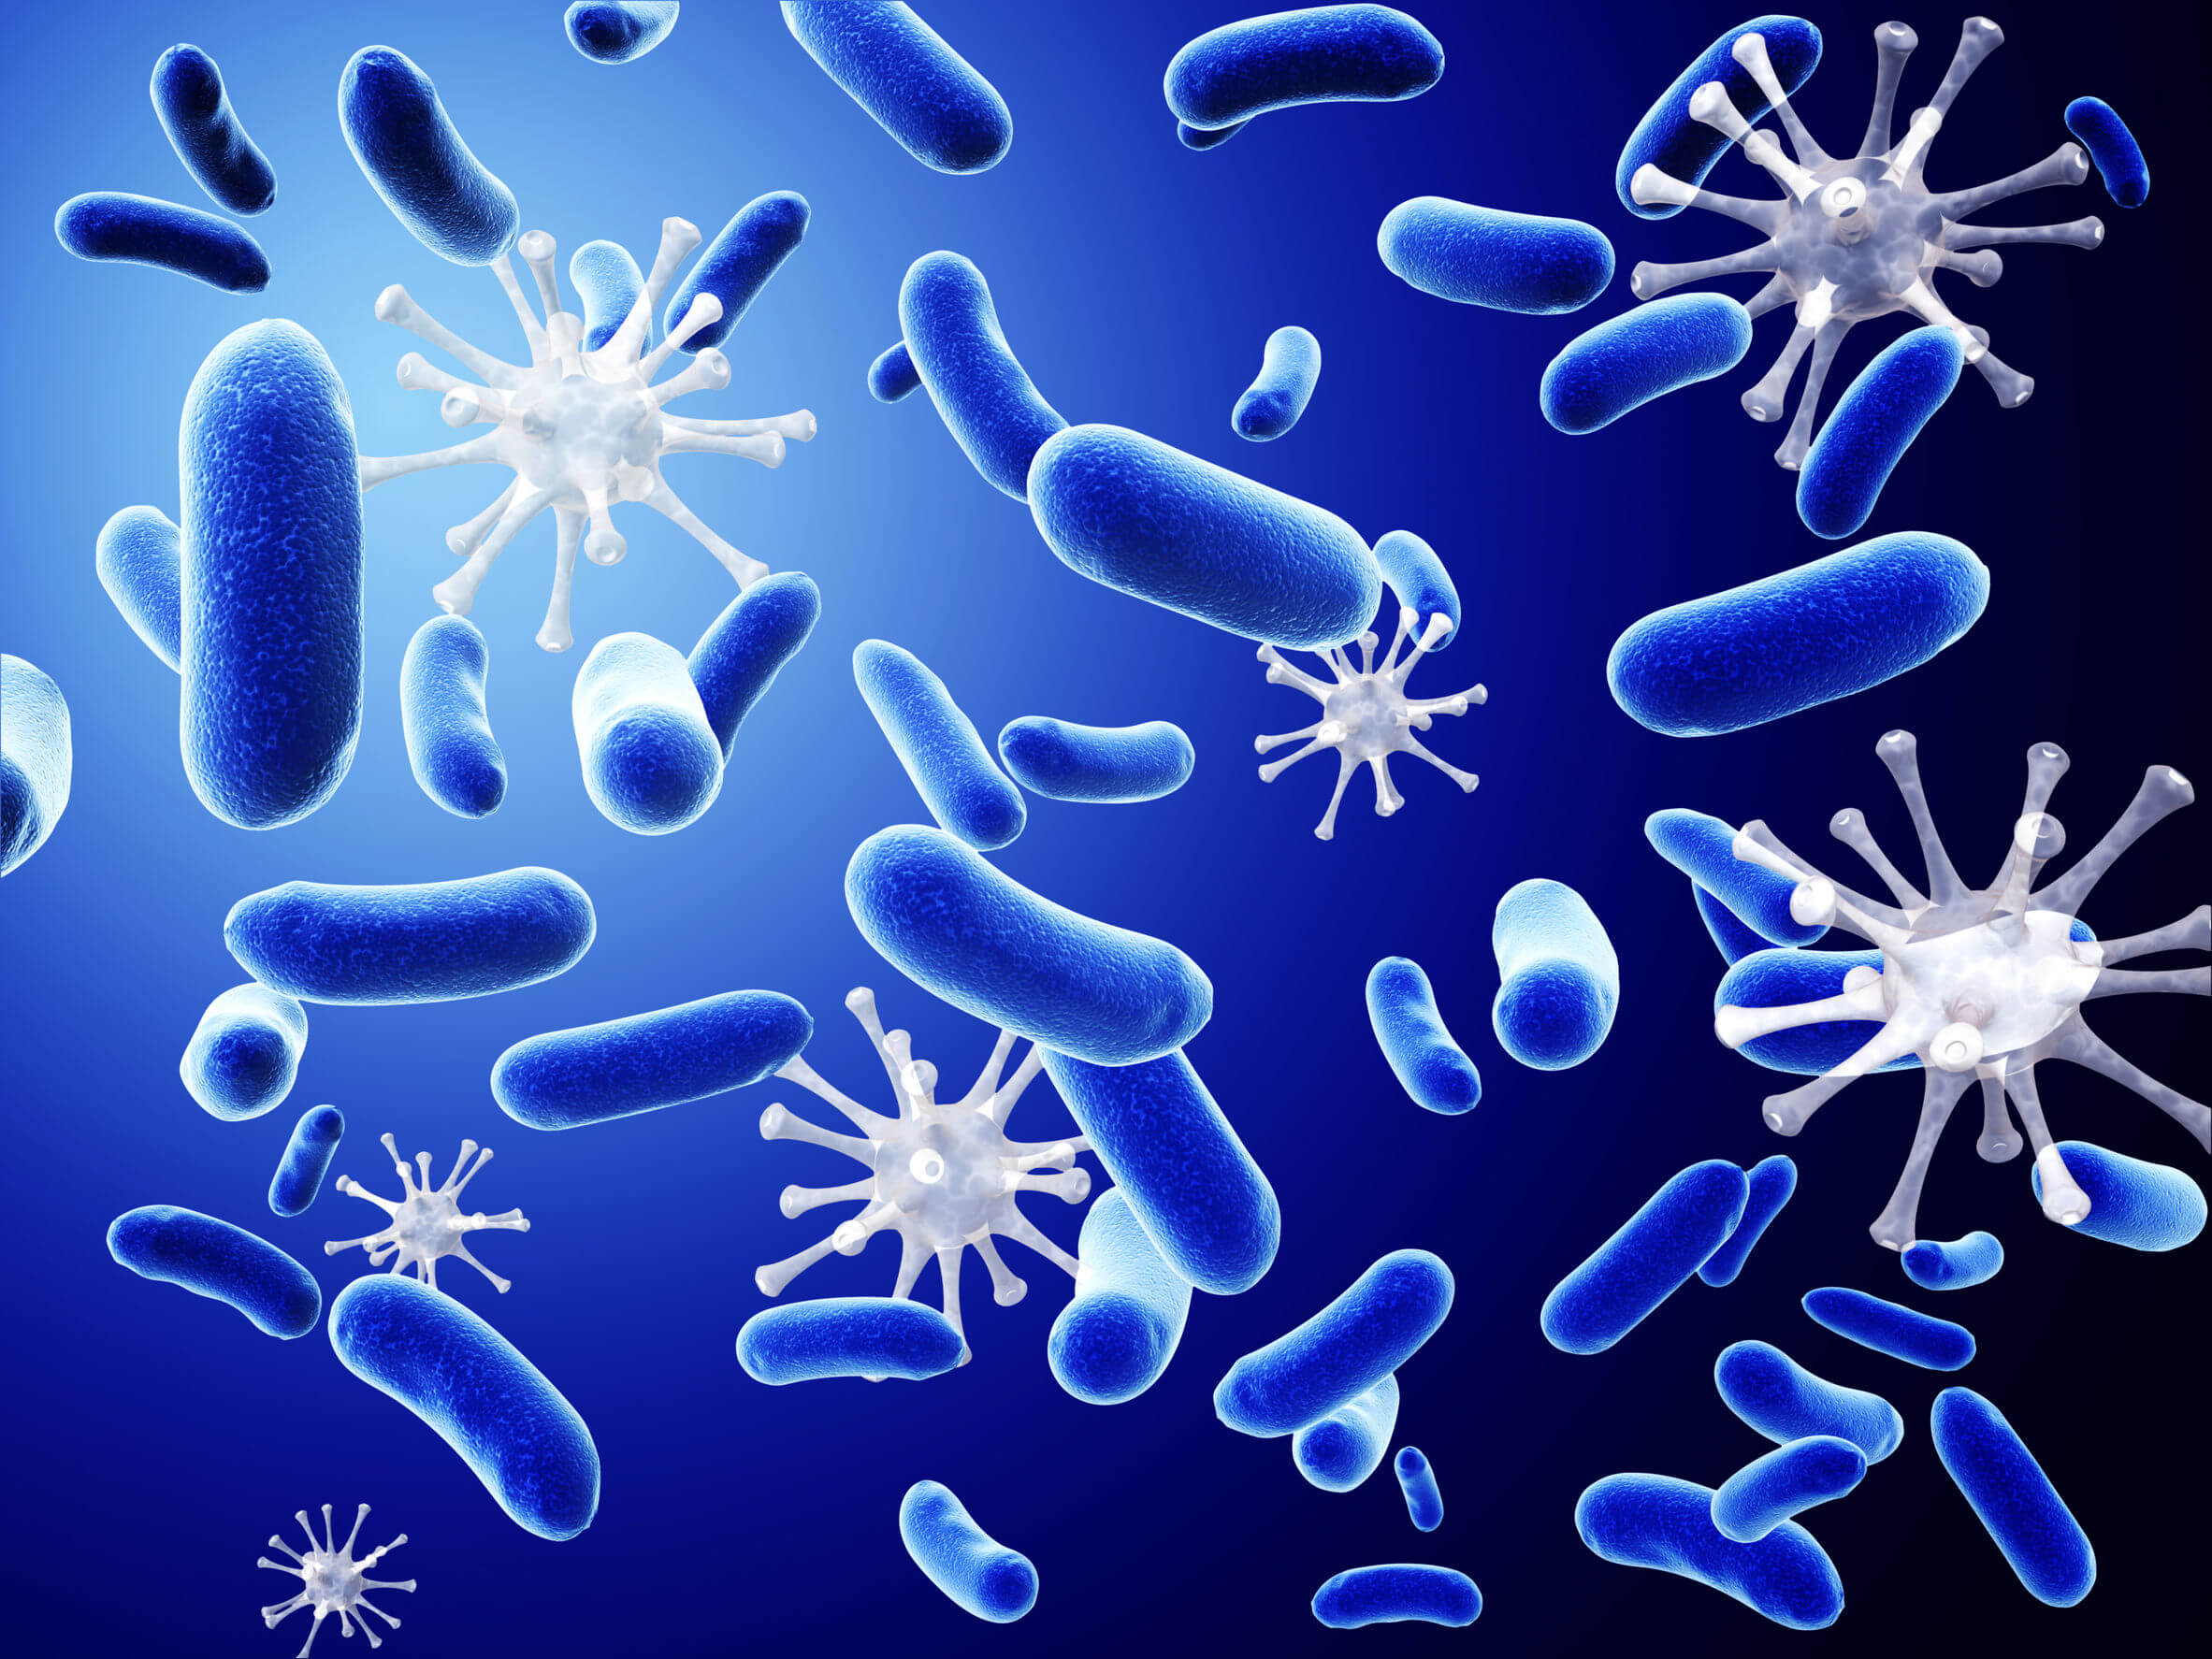 Les cellules Natural Killer sont chargées de protéger le corps contre de multiples infections.